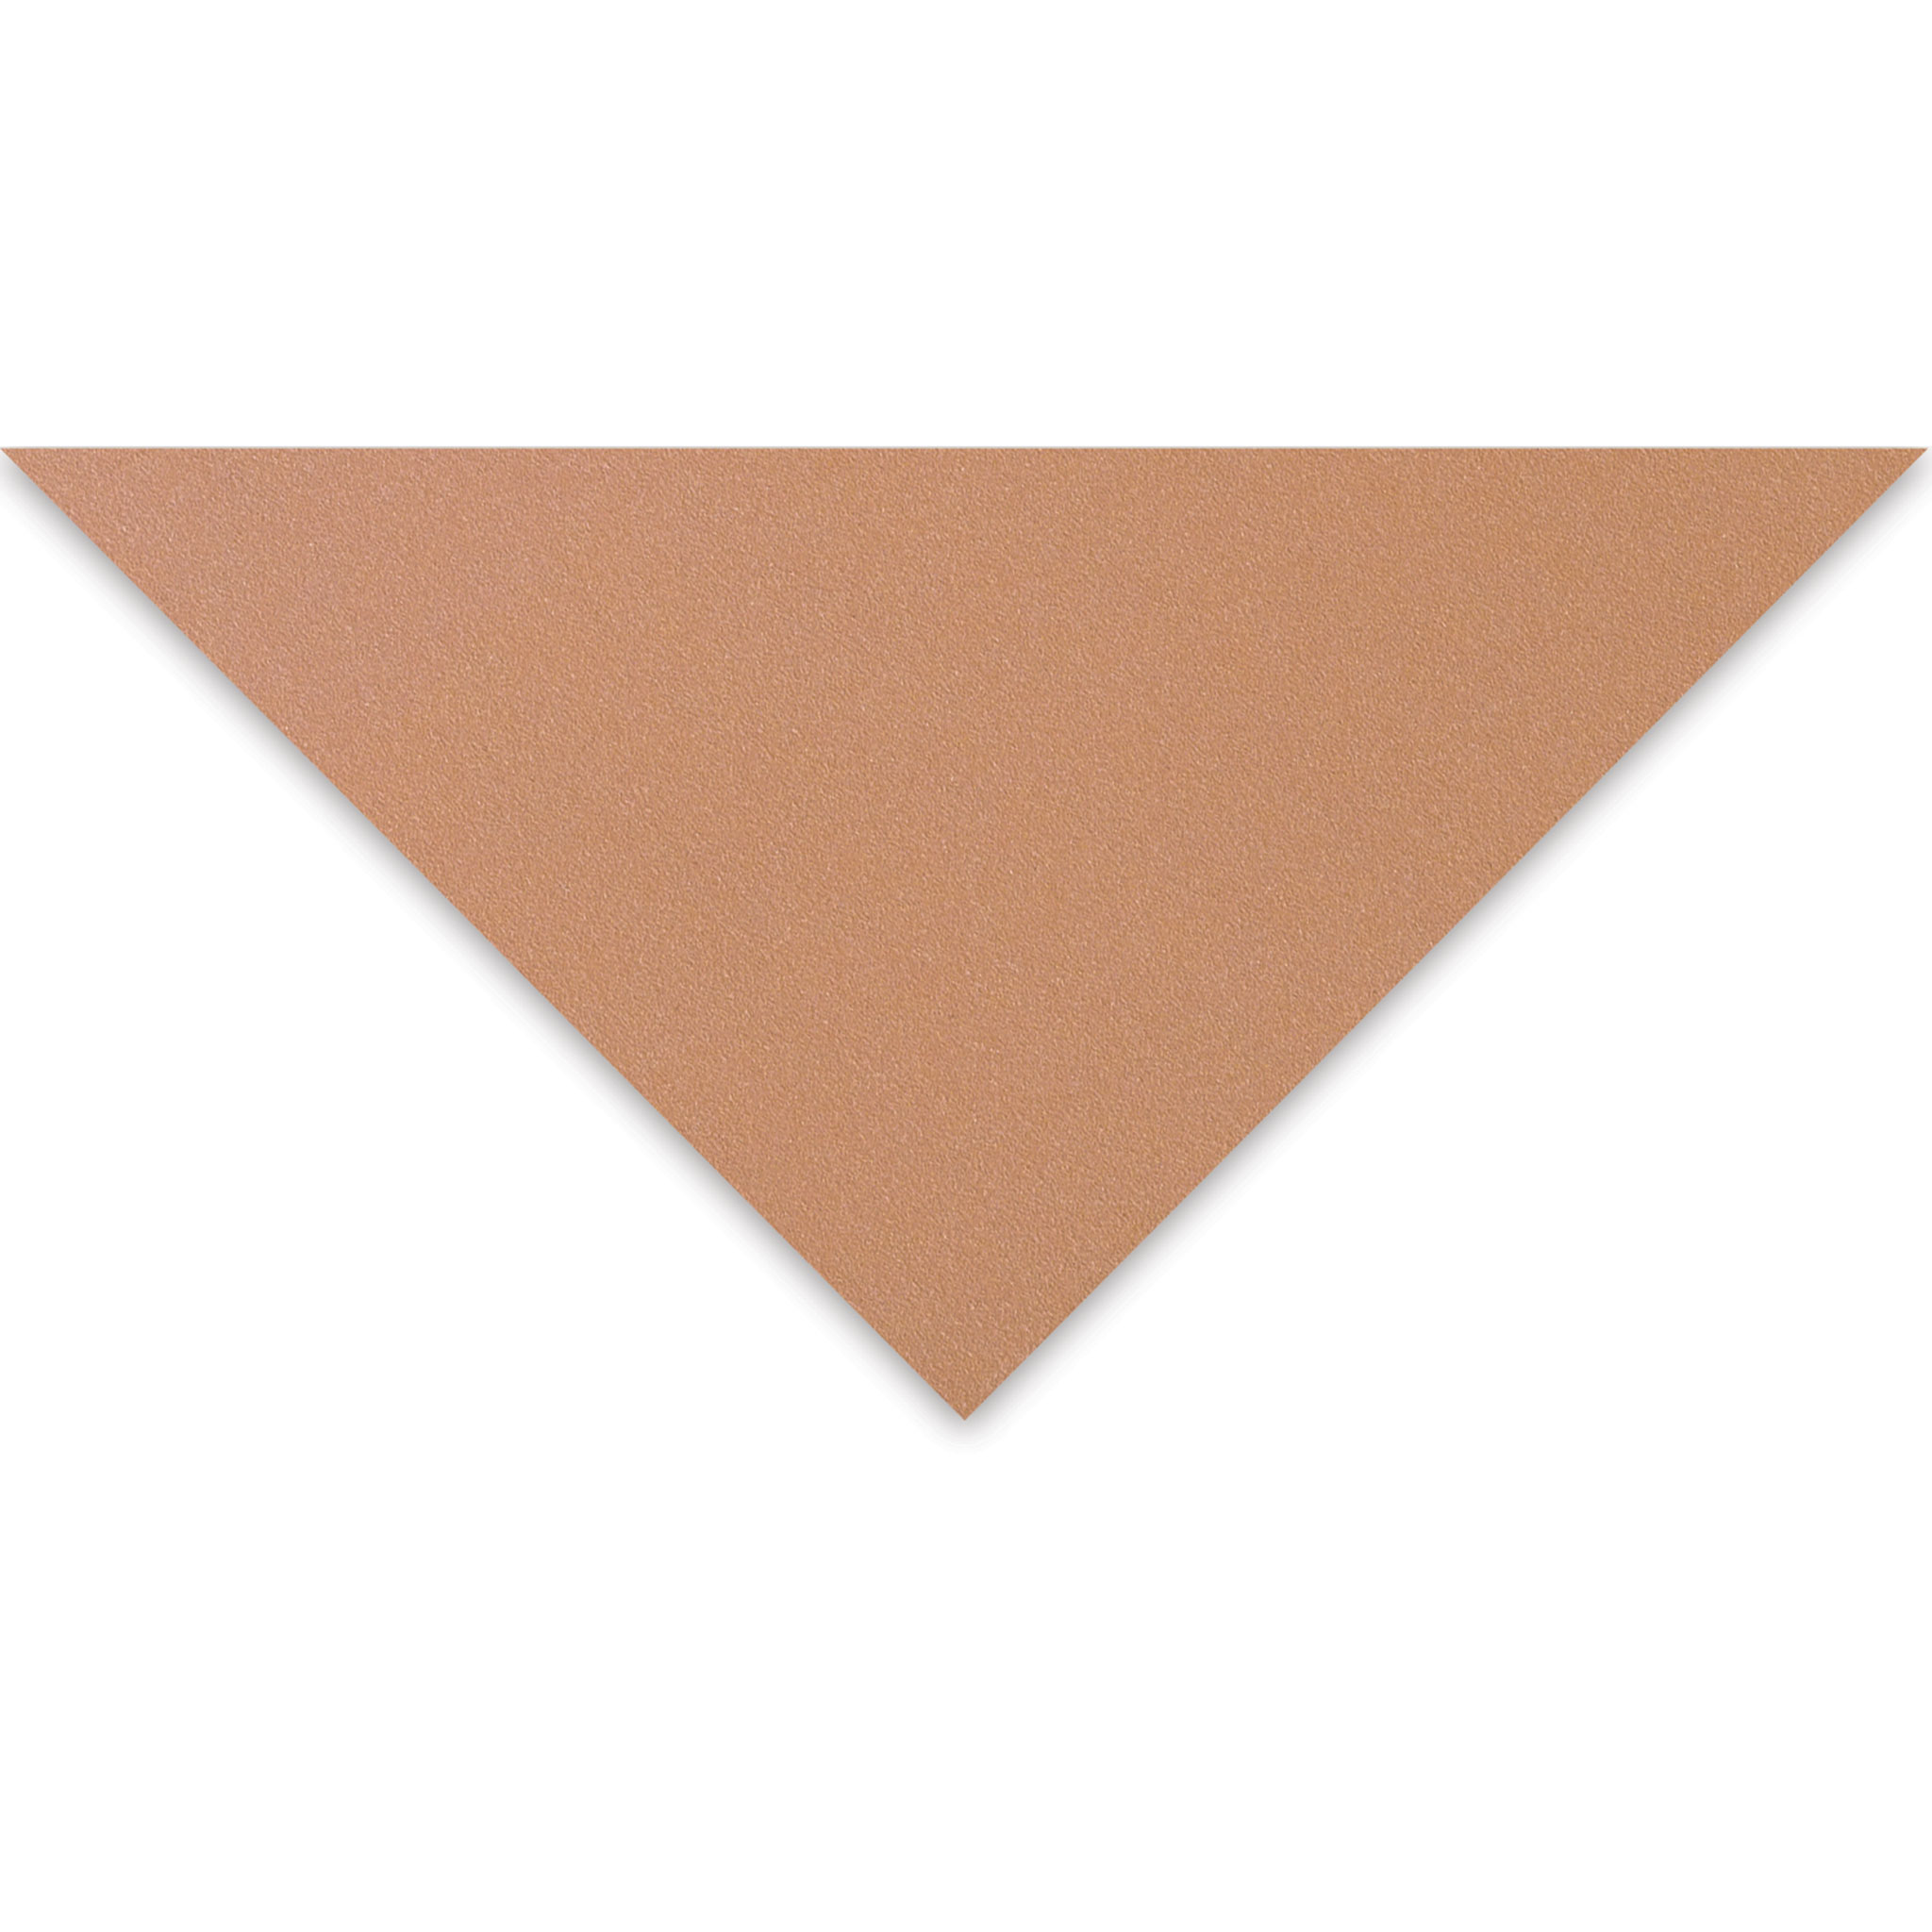 Claire Fontaine : Orange Label Pastelmat Pad 24x30cm : 12 Sheets